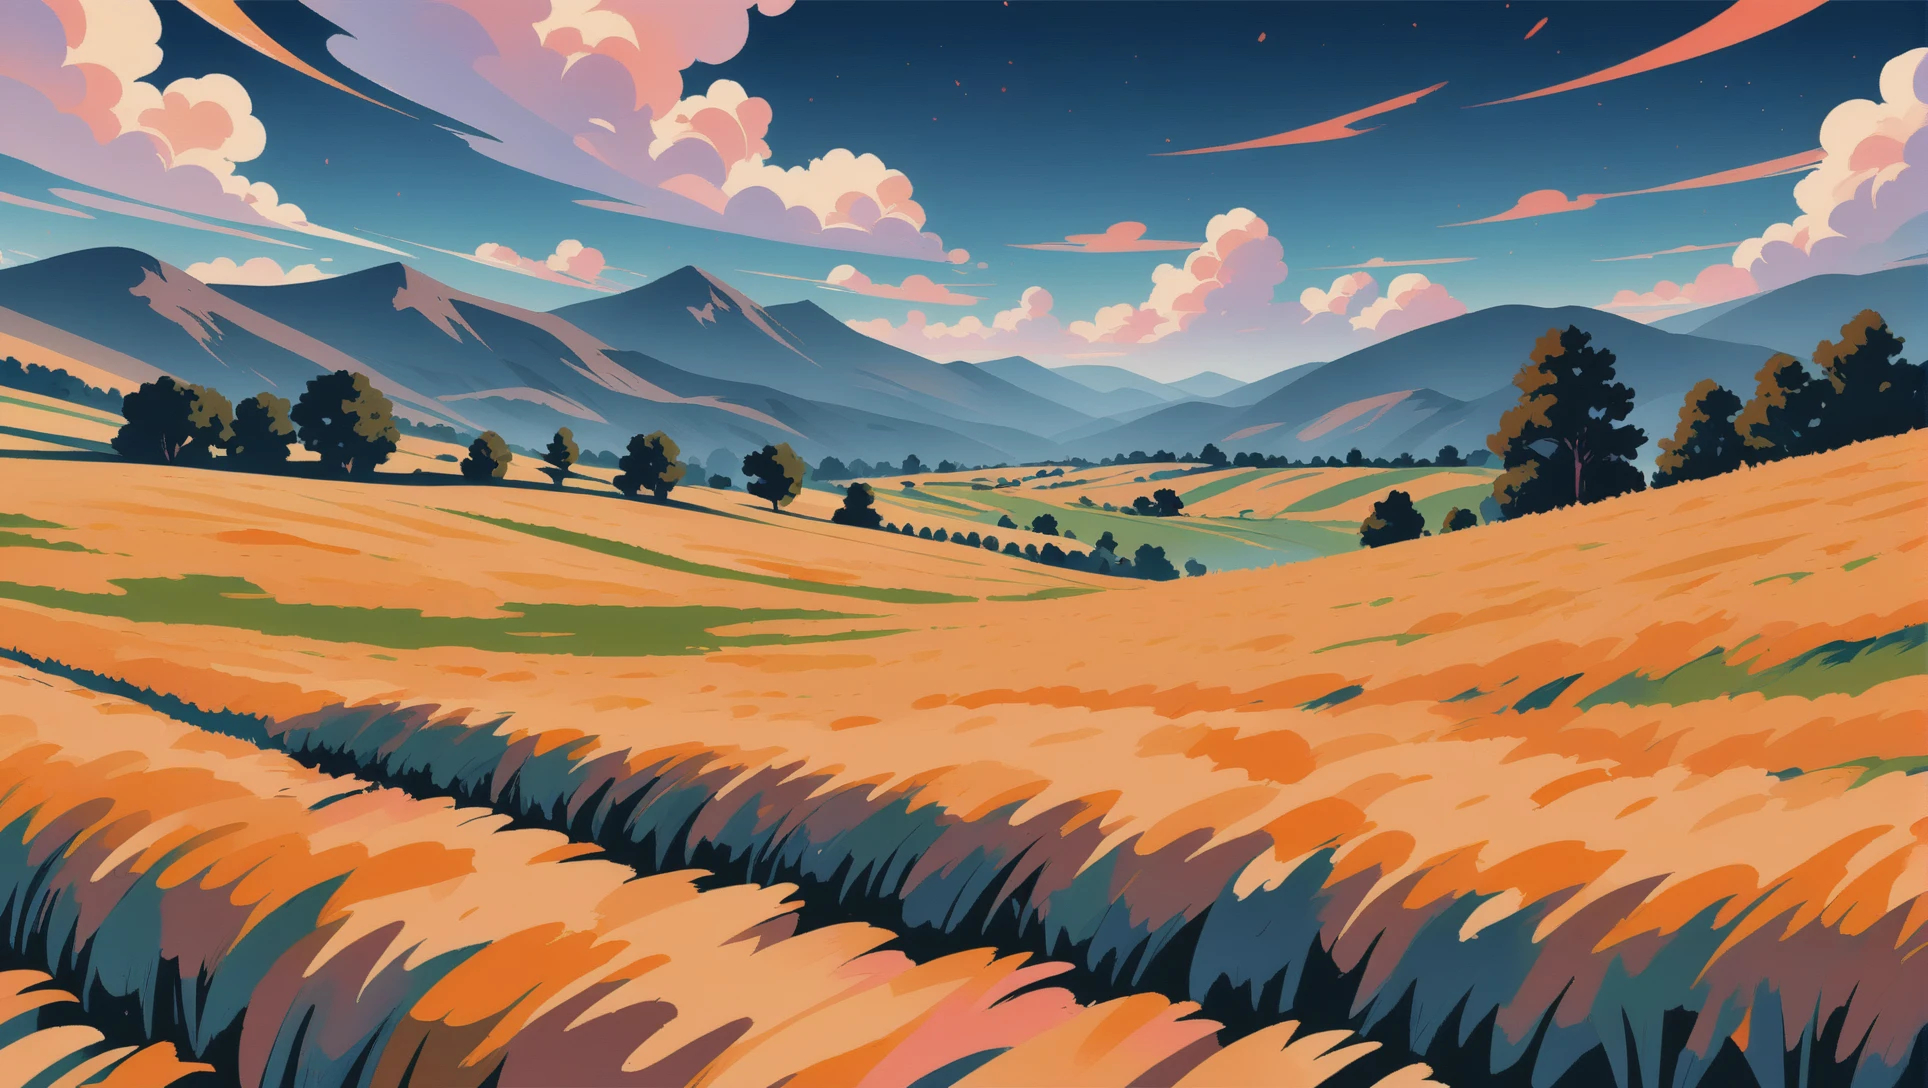 动漫风格绘景, 群山环绕的麦田